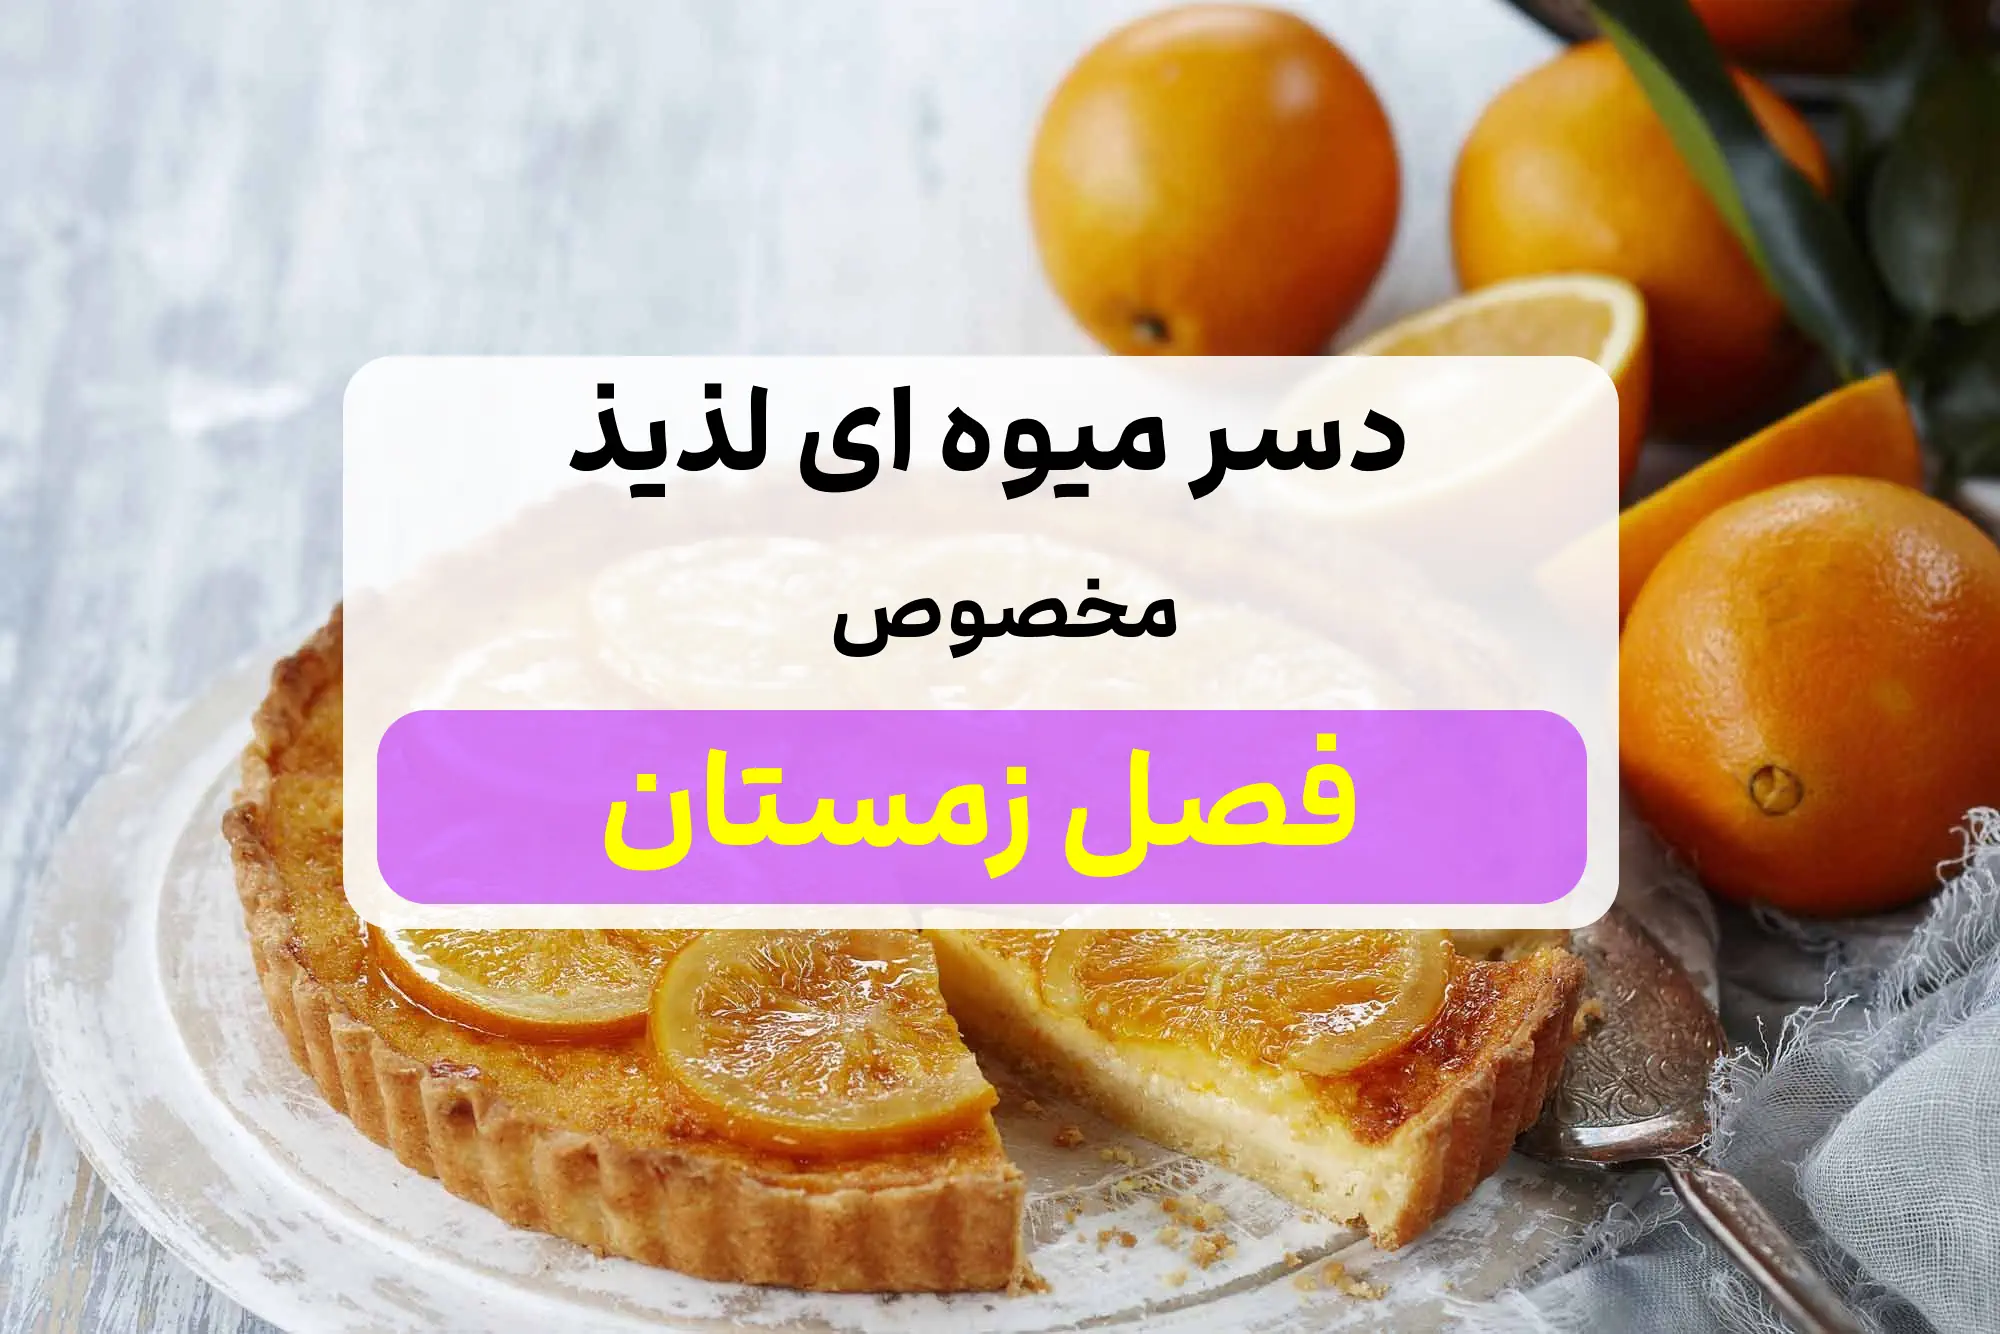 دسر میوه ای لذیذ مخصوص فصل زمستان / تقویت قلب با تارت پرتقال!?